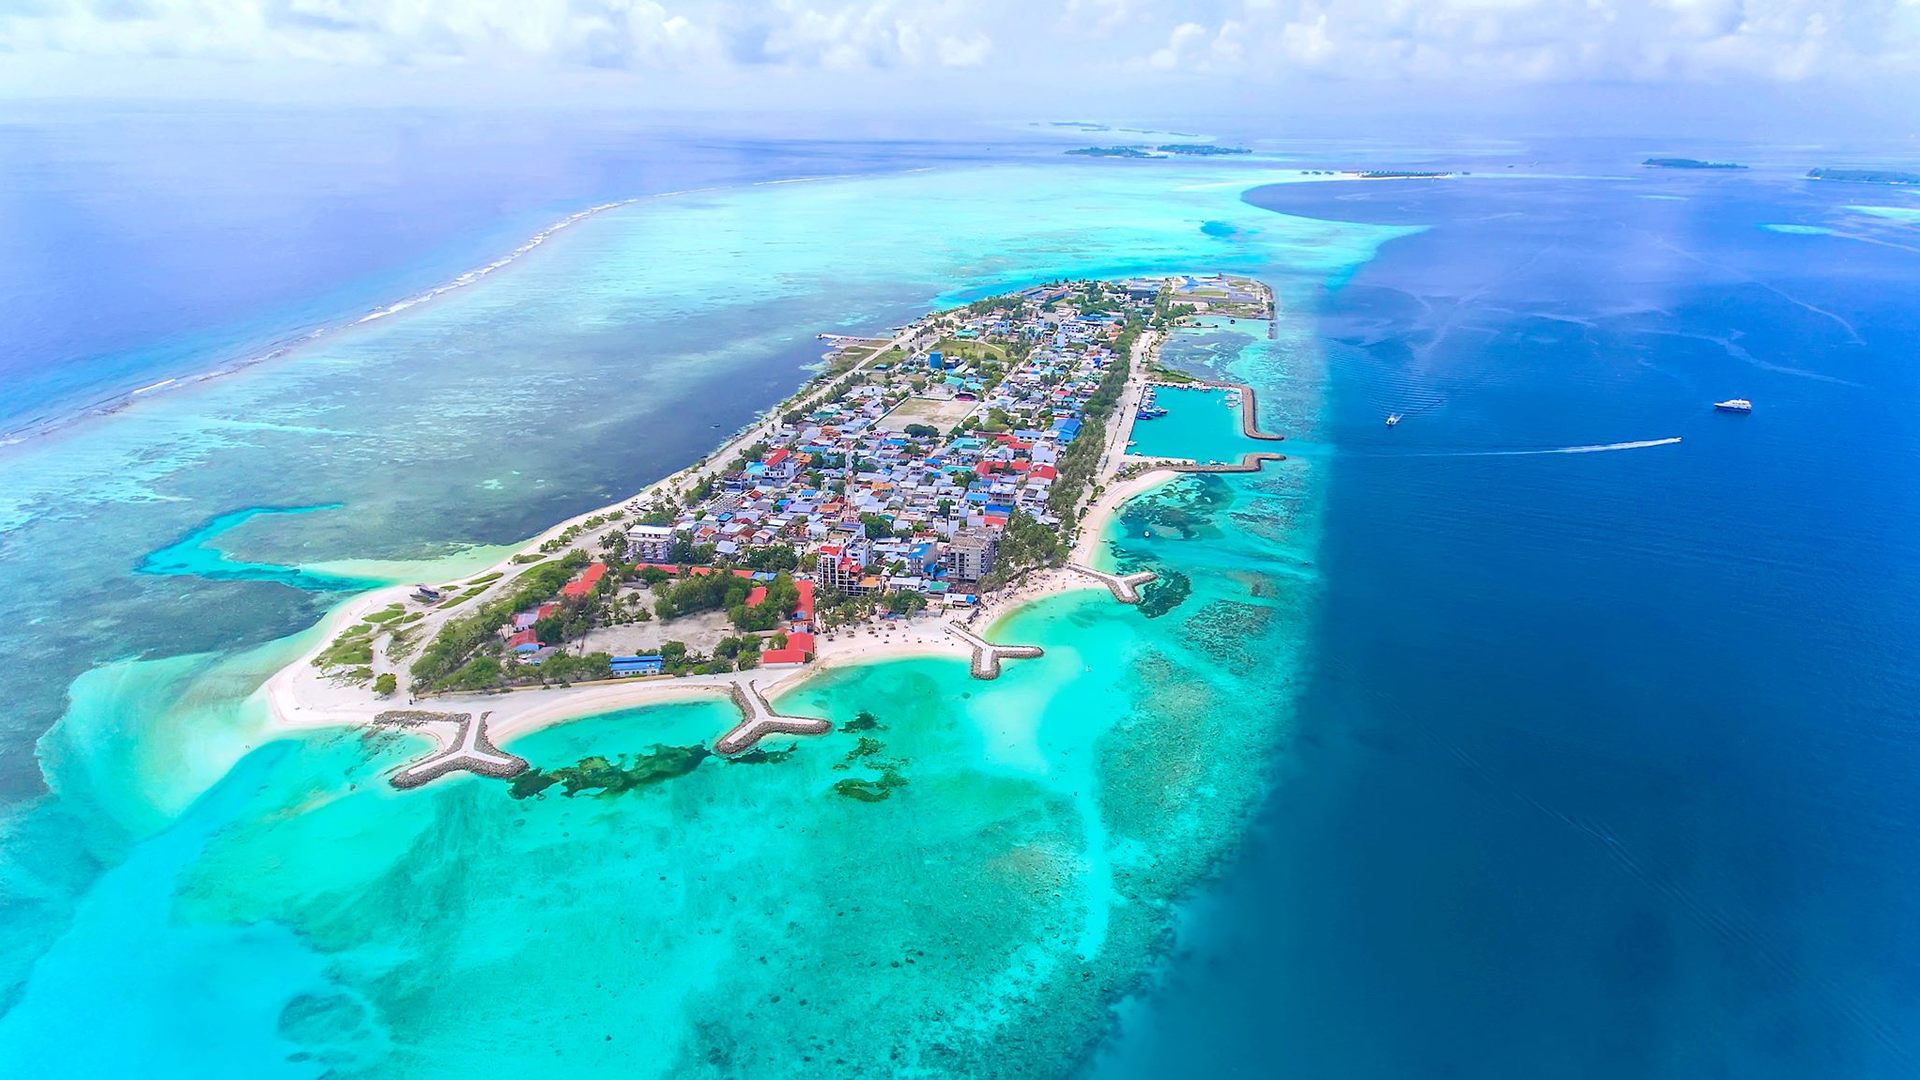 Maldivian Tara Maldives Sex Maldives Sex Maldives Sex Maldives Sex Maldives Sex Mumbai Newly